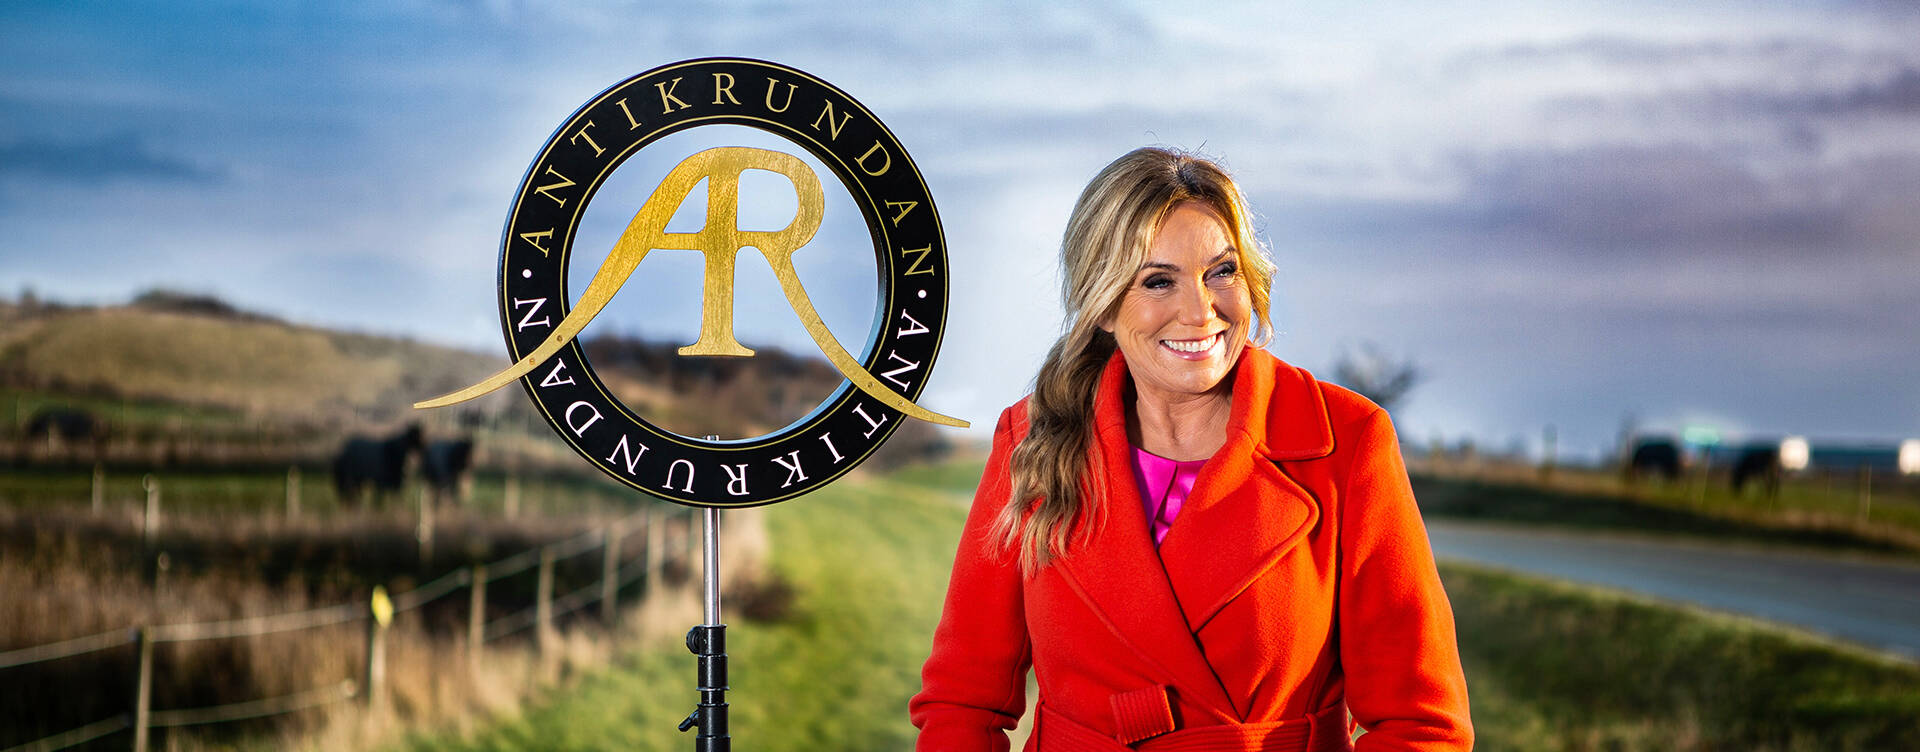 ستزور البرامج التلفزيونية الشهيرة Antikrundan 6 أماكن في السويد هذا الصيف - TheMayor.EU